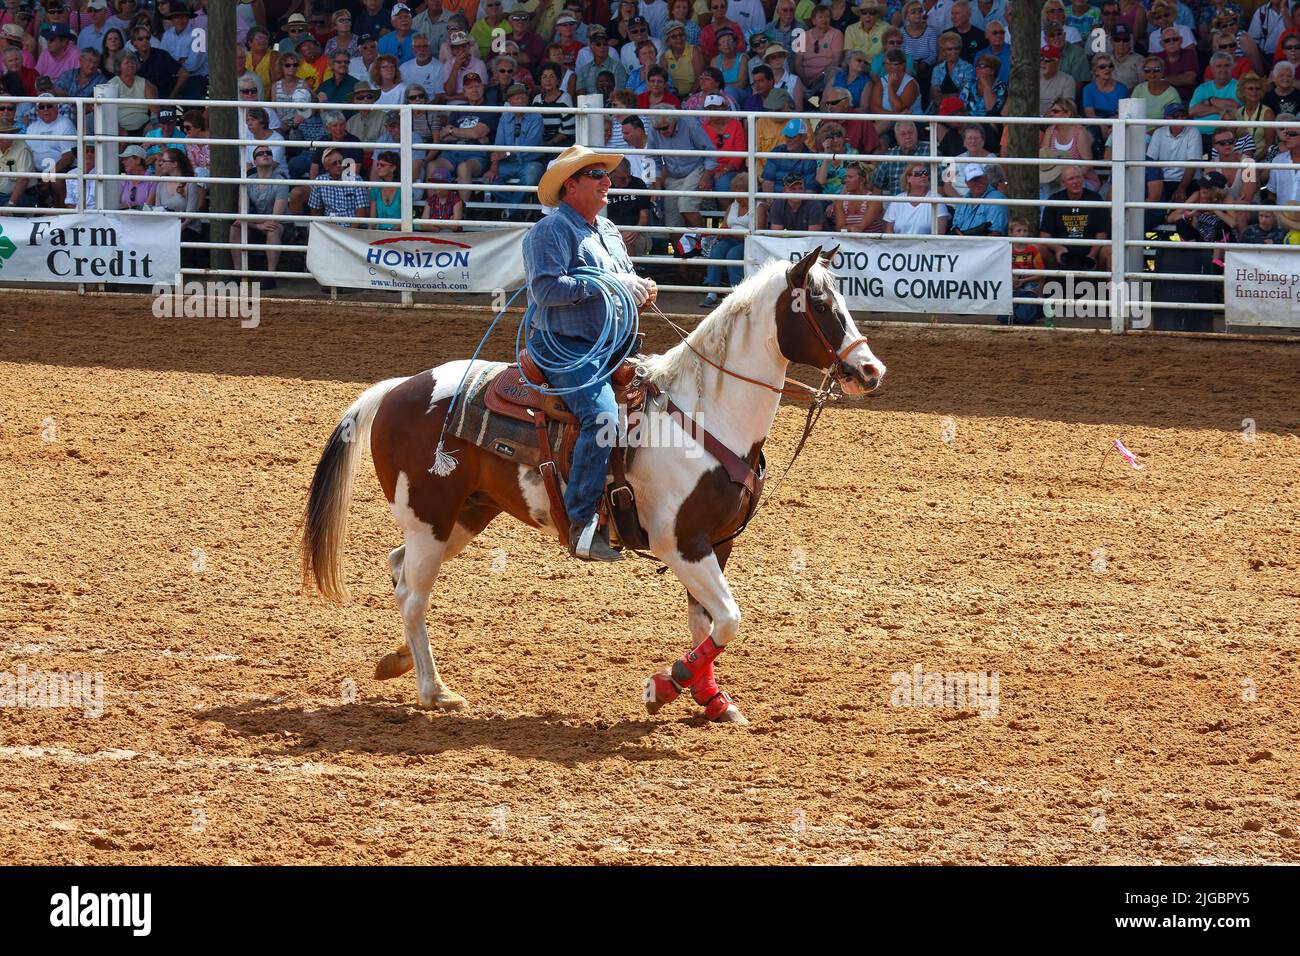 rodeo, homme équitation, tenue de lasso, travail, stands, spectateurs, concours, concours, animaux, personnes, Crowd, Floride; Arcadia; FL Banque D'Images